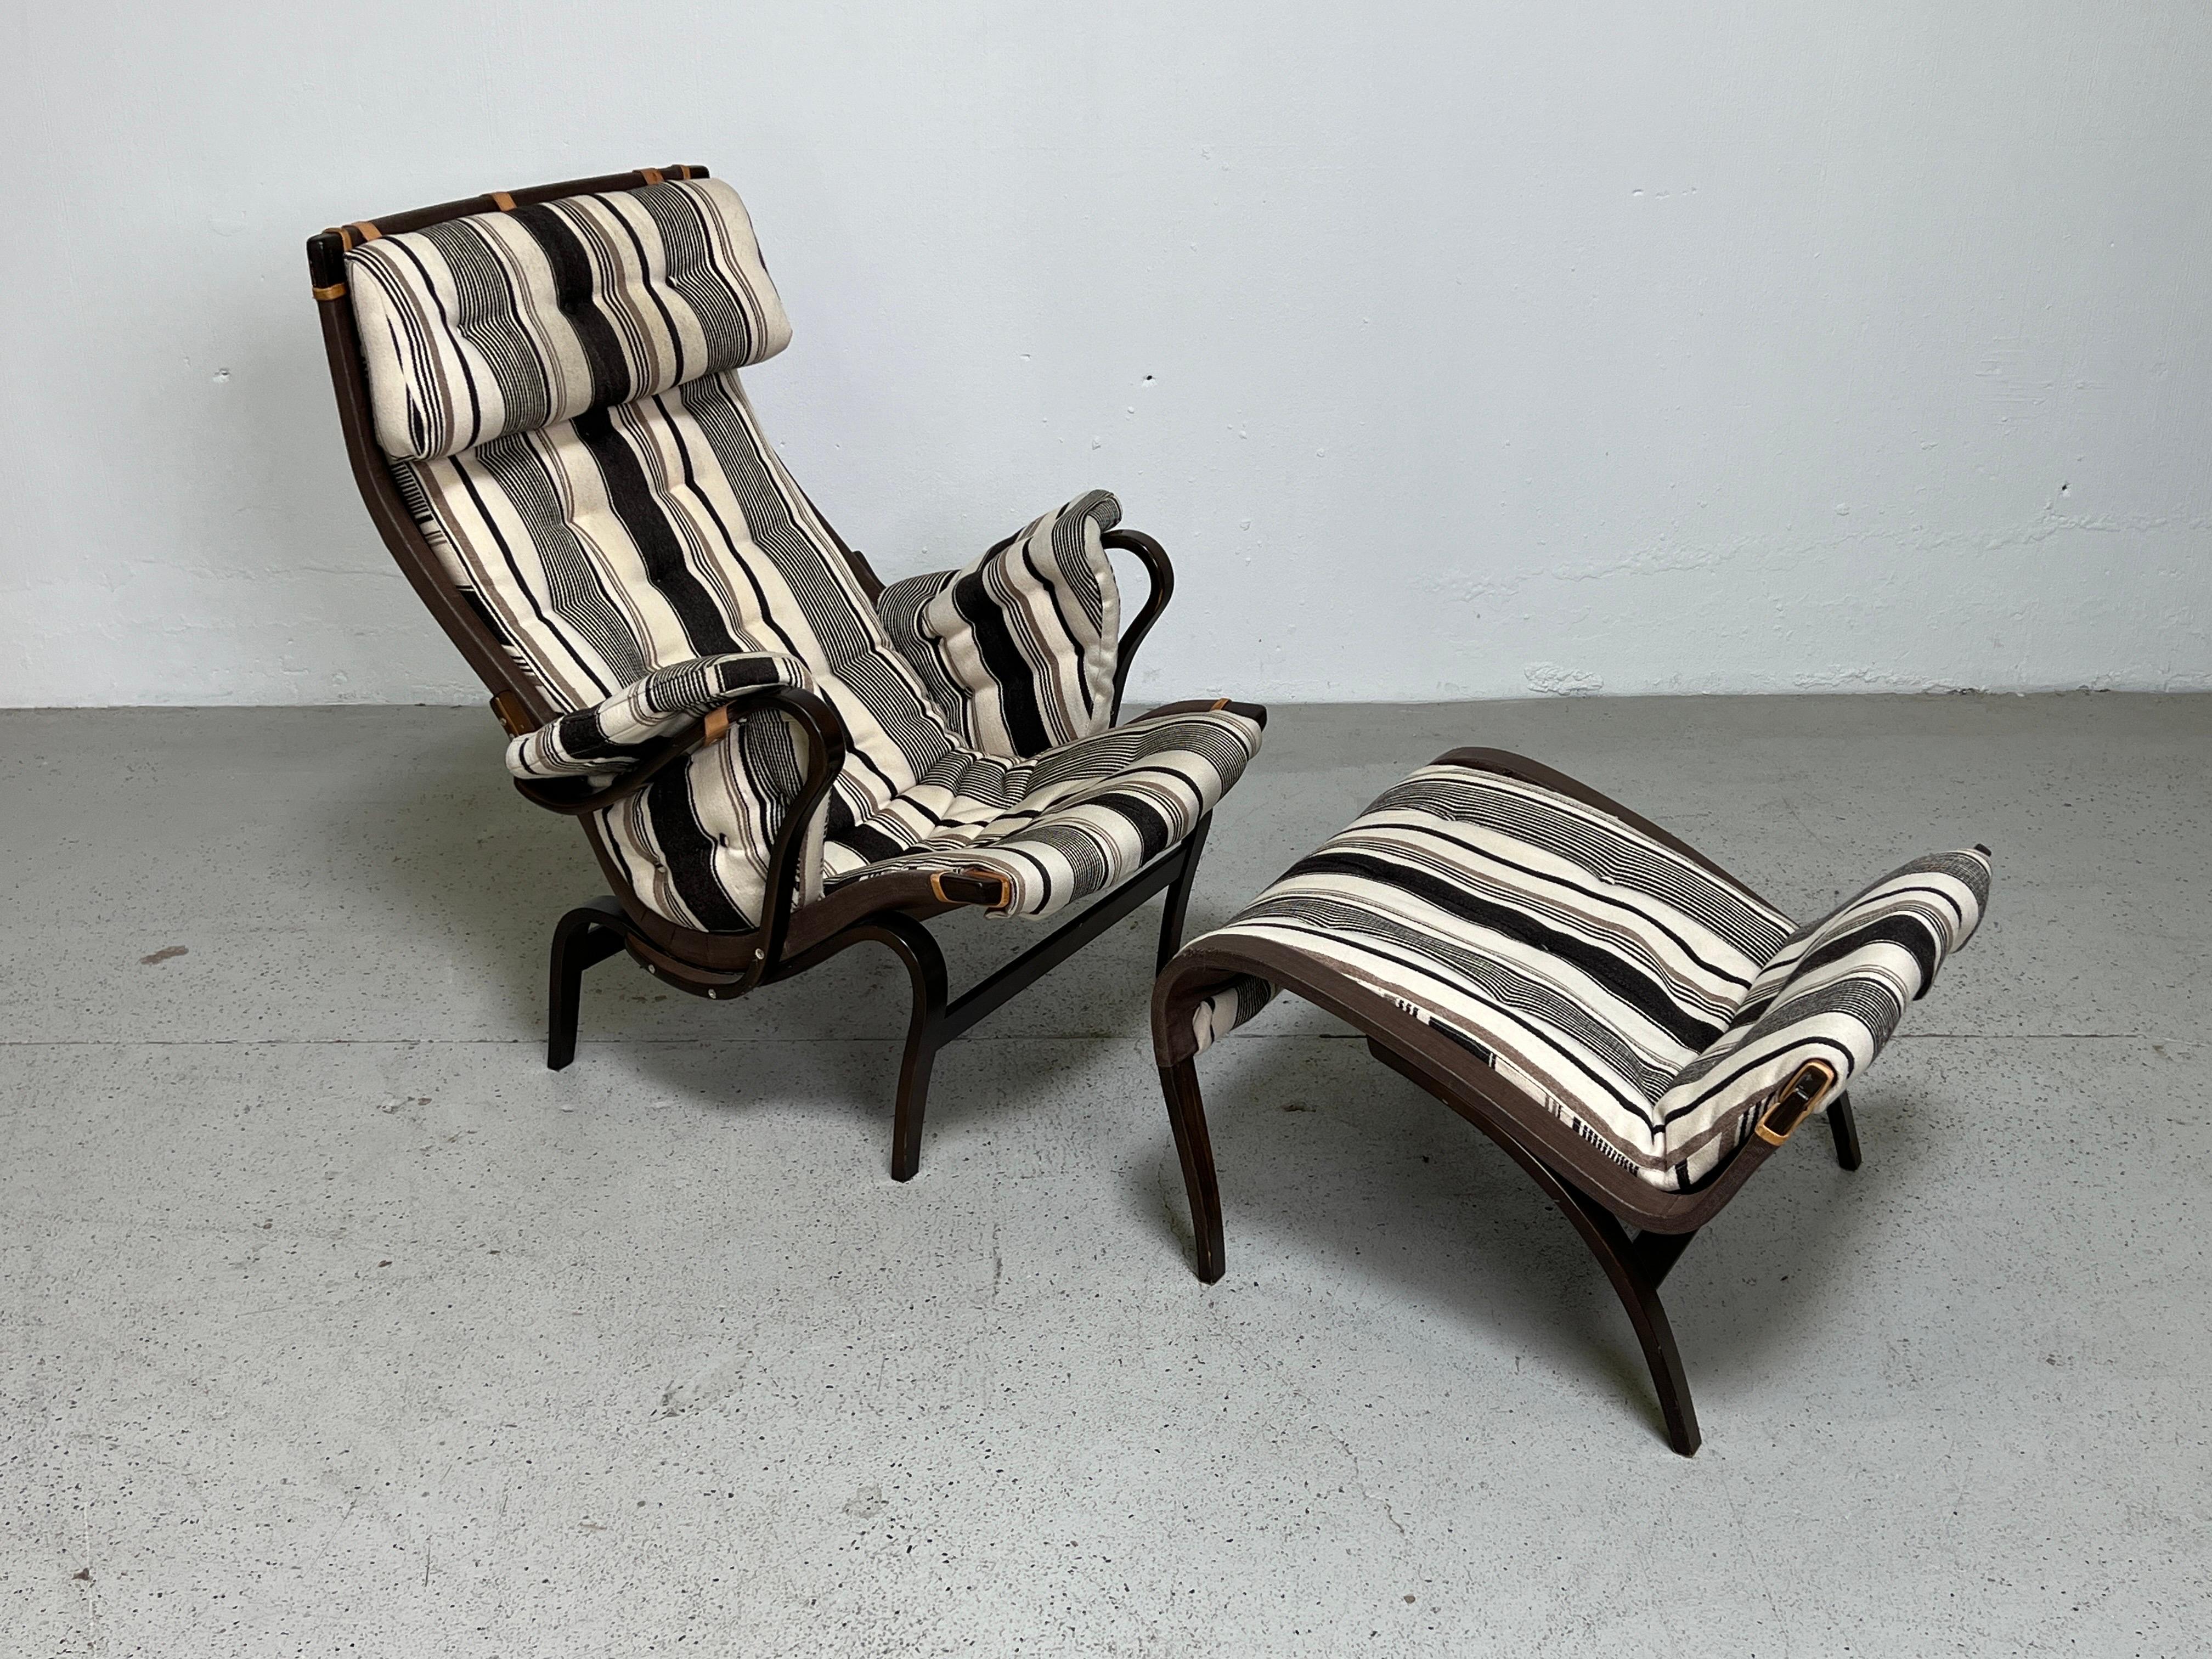 Une chaise longue et un ottoman Pernilla conçus par Bruno Mathsson dans un tissu original.  